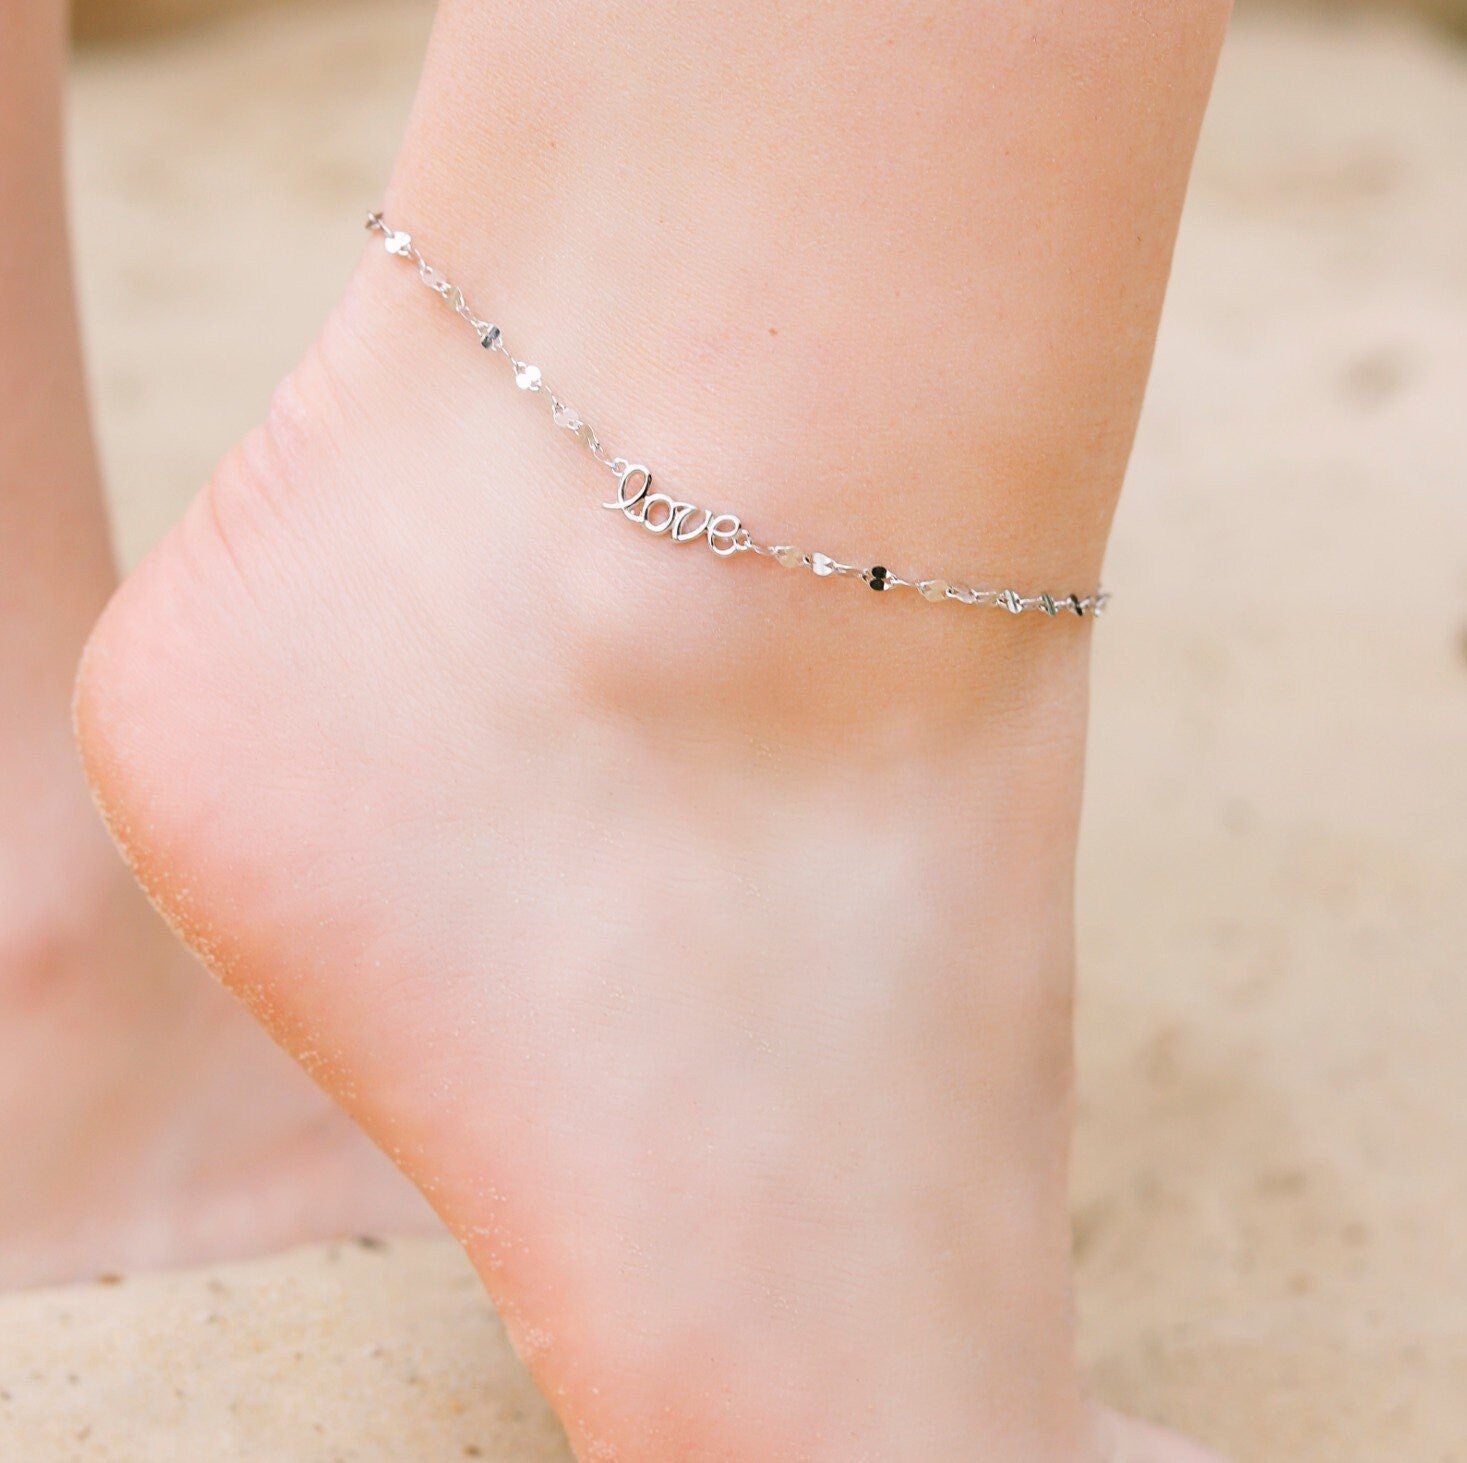 Estelle - Affectionate "LOVE" written Anklet, Gold Anklets, Silver Anklets, Anklets for Women